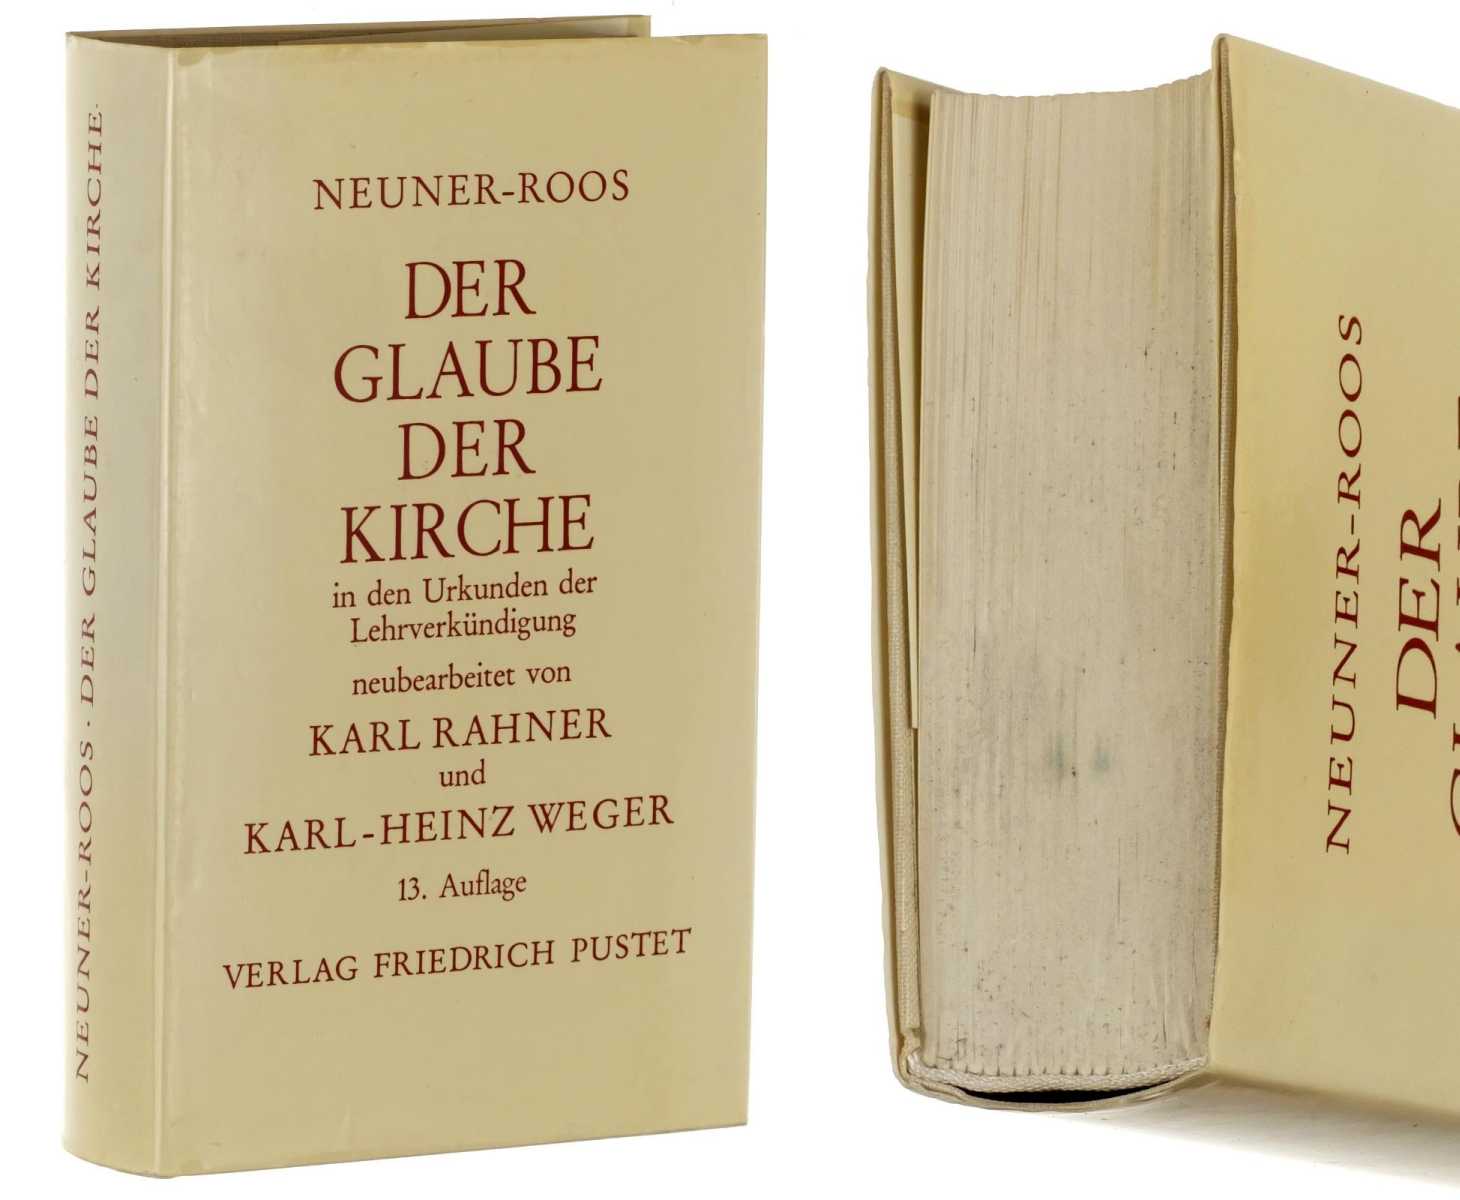 Neuner, Josef; Roos, Heinrich:  Der Glaube der Kirche in den Urkunden der Lehrverkündigung. Neubearb. v. Karl Rahner u. Karl-Heinz Weger. 